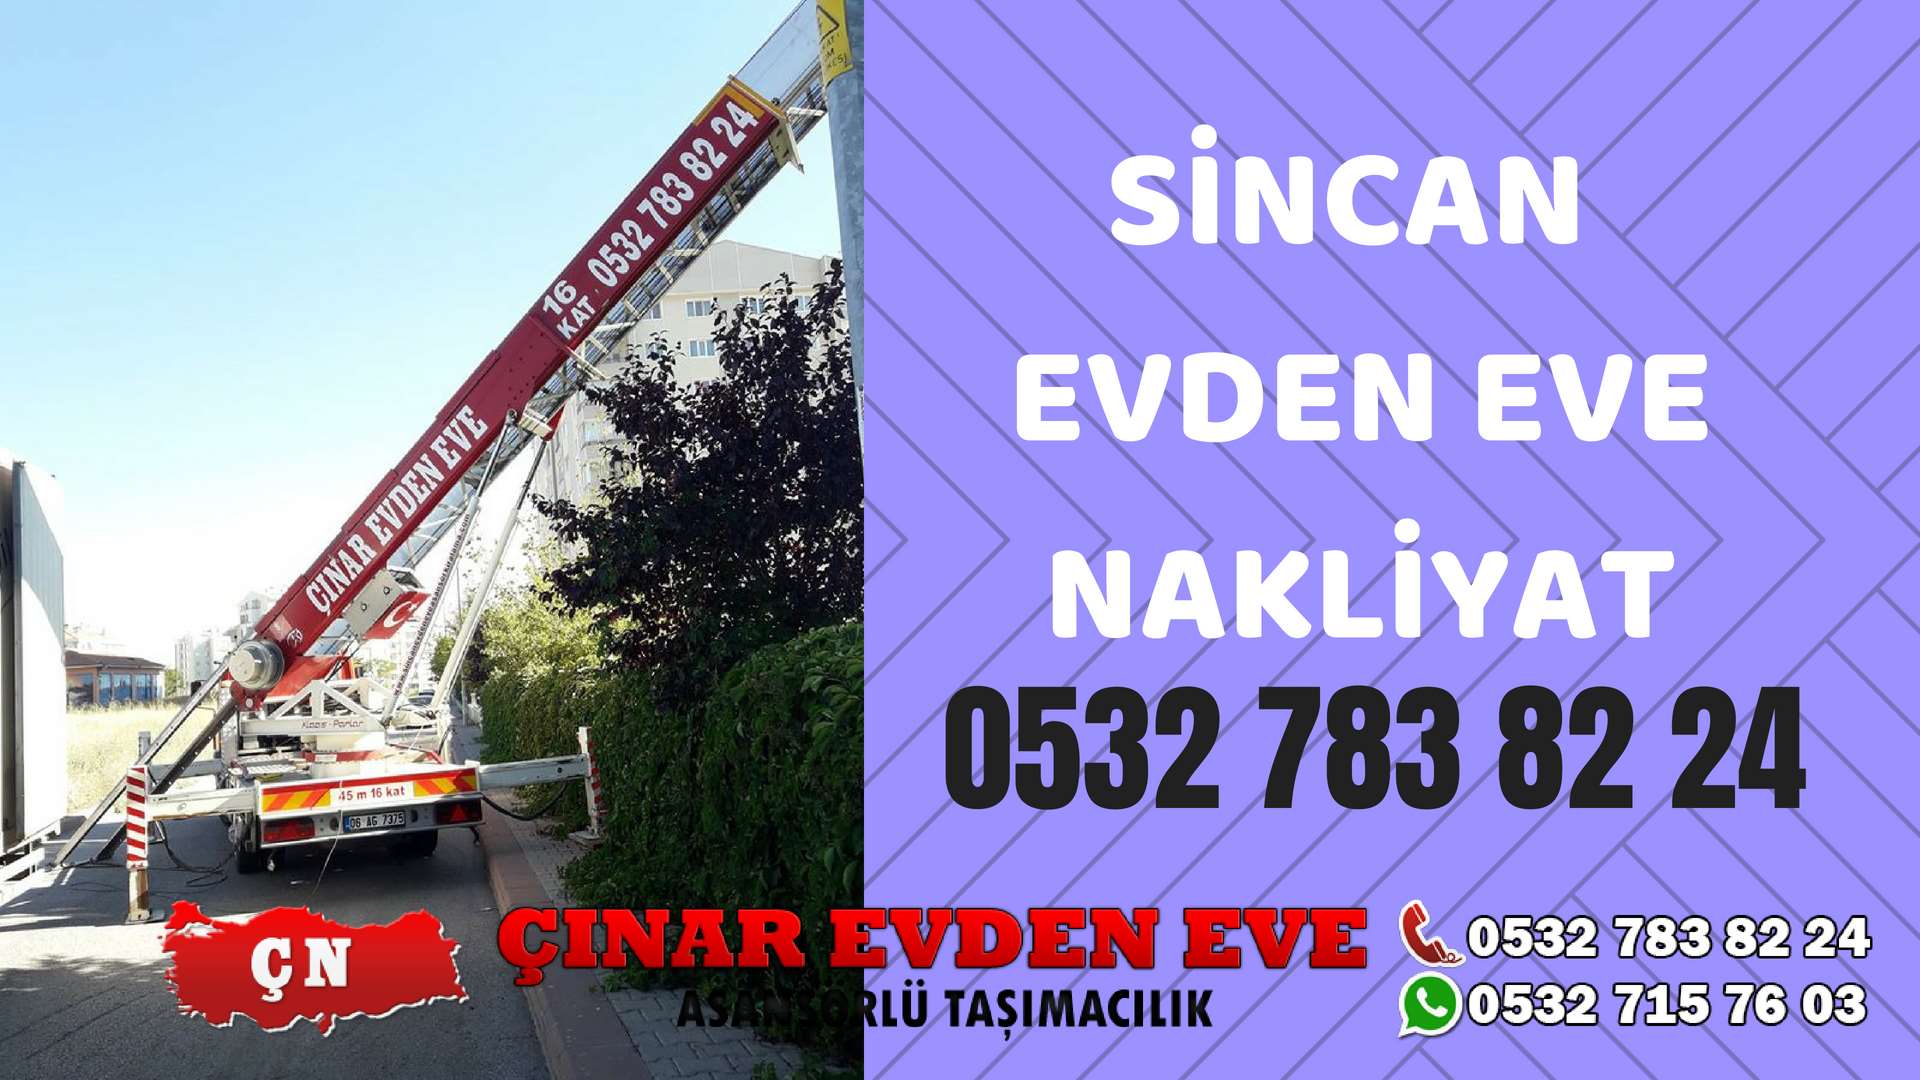 Ankara Eryaman Sincan Evden Eve Nakliyat, Asansörlü Taşıma Çınar Nakliyat Sincan 0532 715 76 03